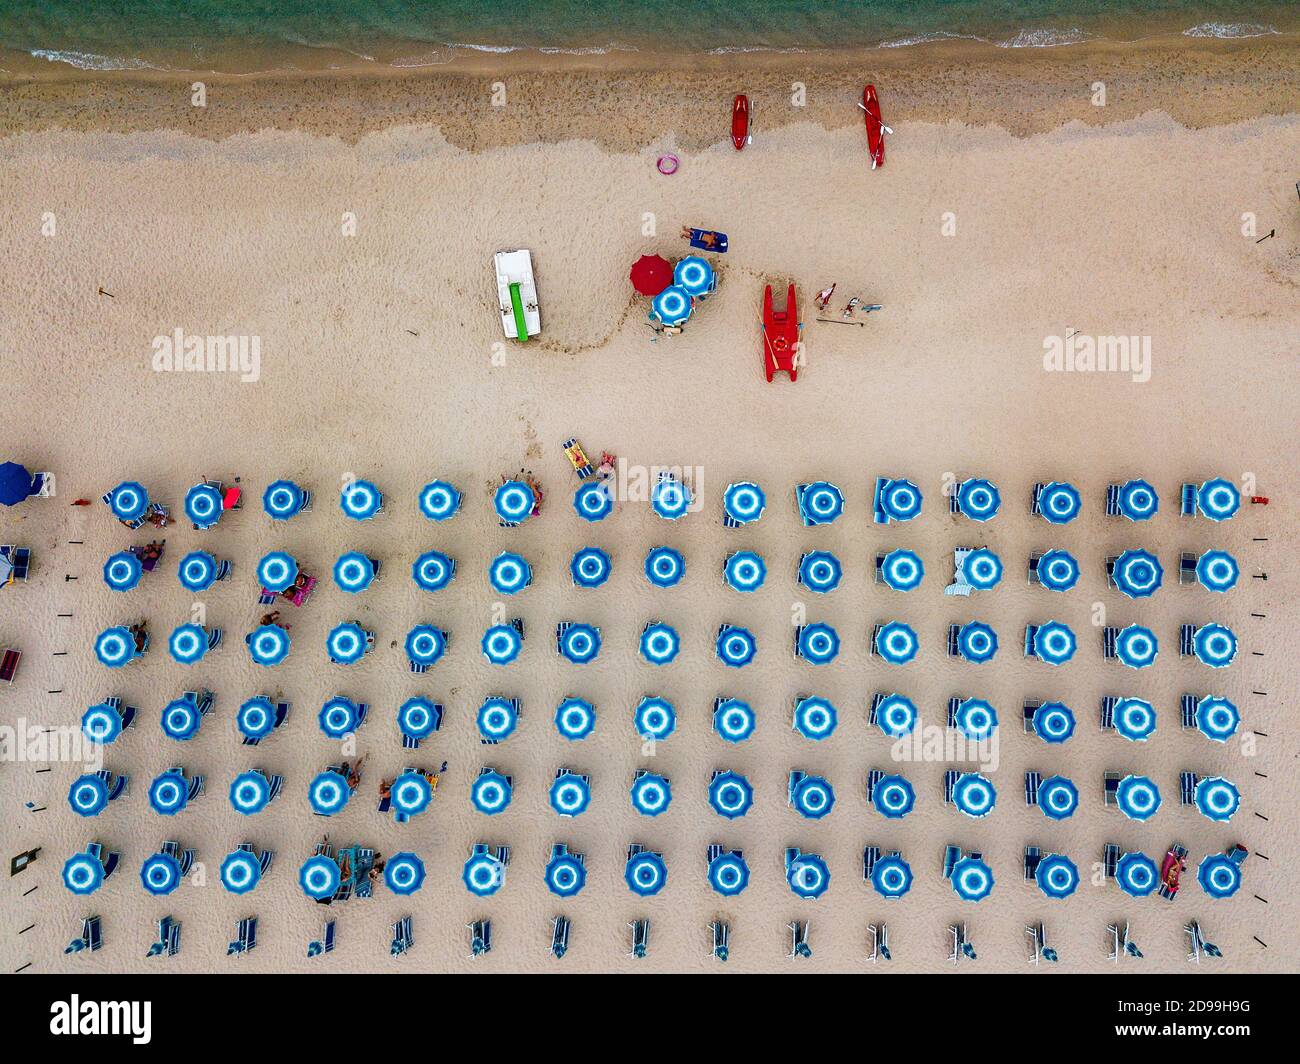 Vista aerea di una spiaggia e ombrelloni. Tropea, Calabria, Italia.  Parghelia. Panoramica dei fondali marini visti dall'alto, acqua  trasparente. Nuotatori, bagnanti Foto stock - Alamy